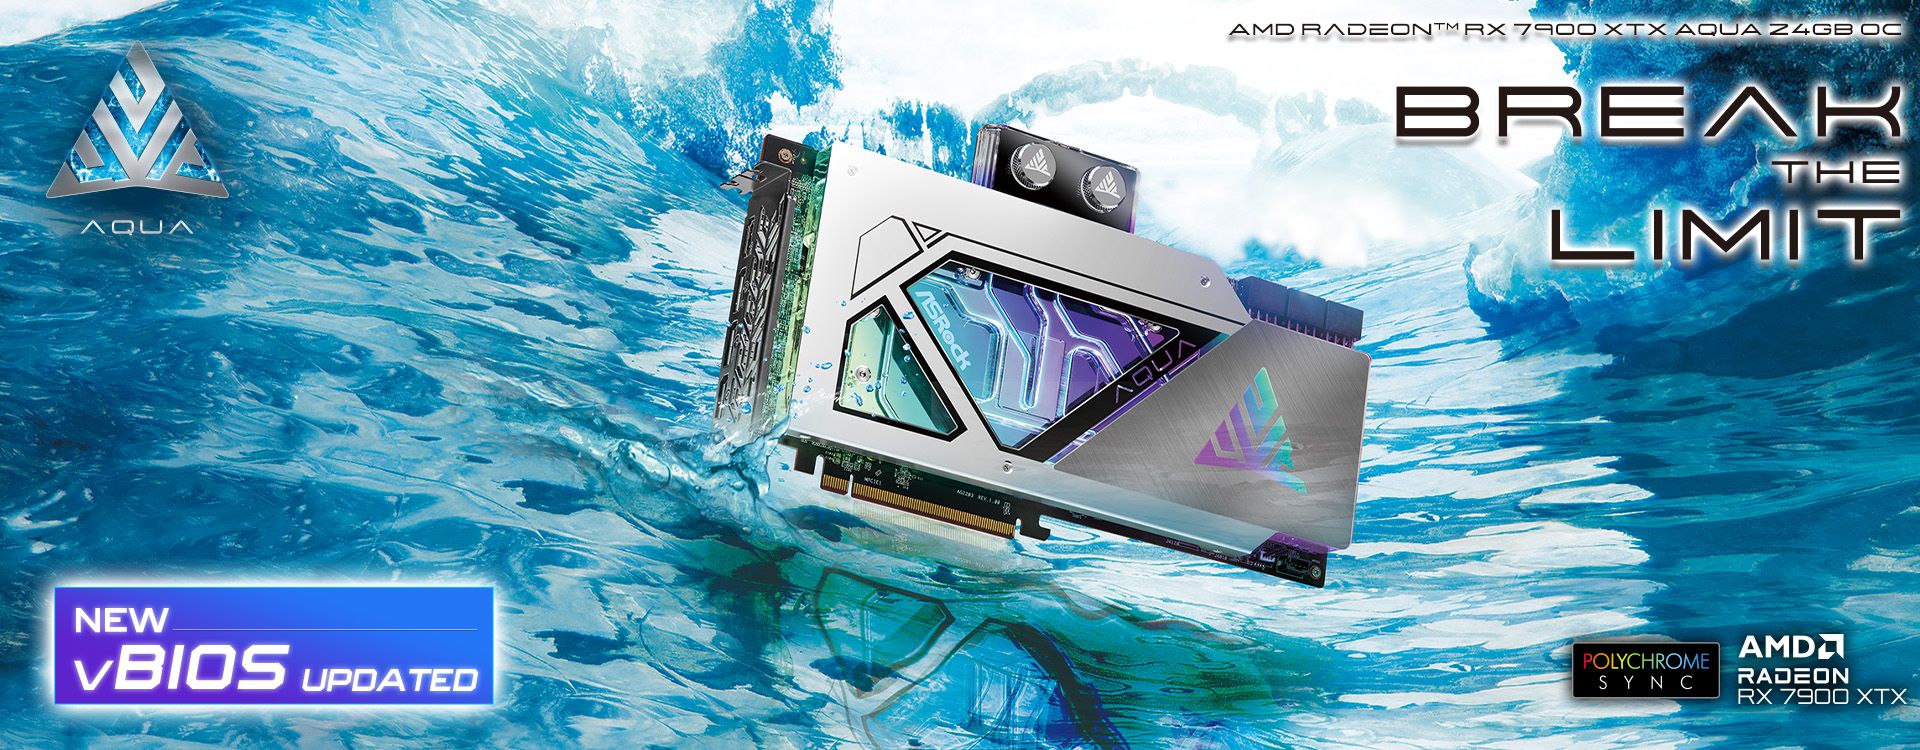 Immagine pubblicata in relazione al seguente contenuto: ASRock velocizza la Radeon RX 7900 XTX AQUA 24GB OC con un vBIOS update | Nome immagine: news34523_ASRock_Radeon-RX-7900-XTX-AQUA-24GB-OC_1.jpg